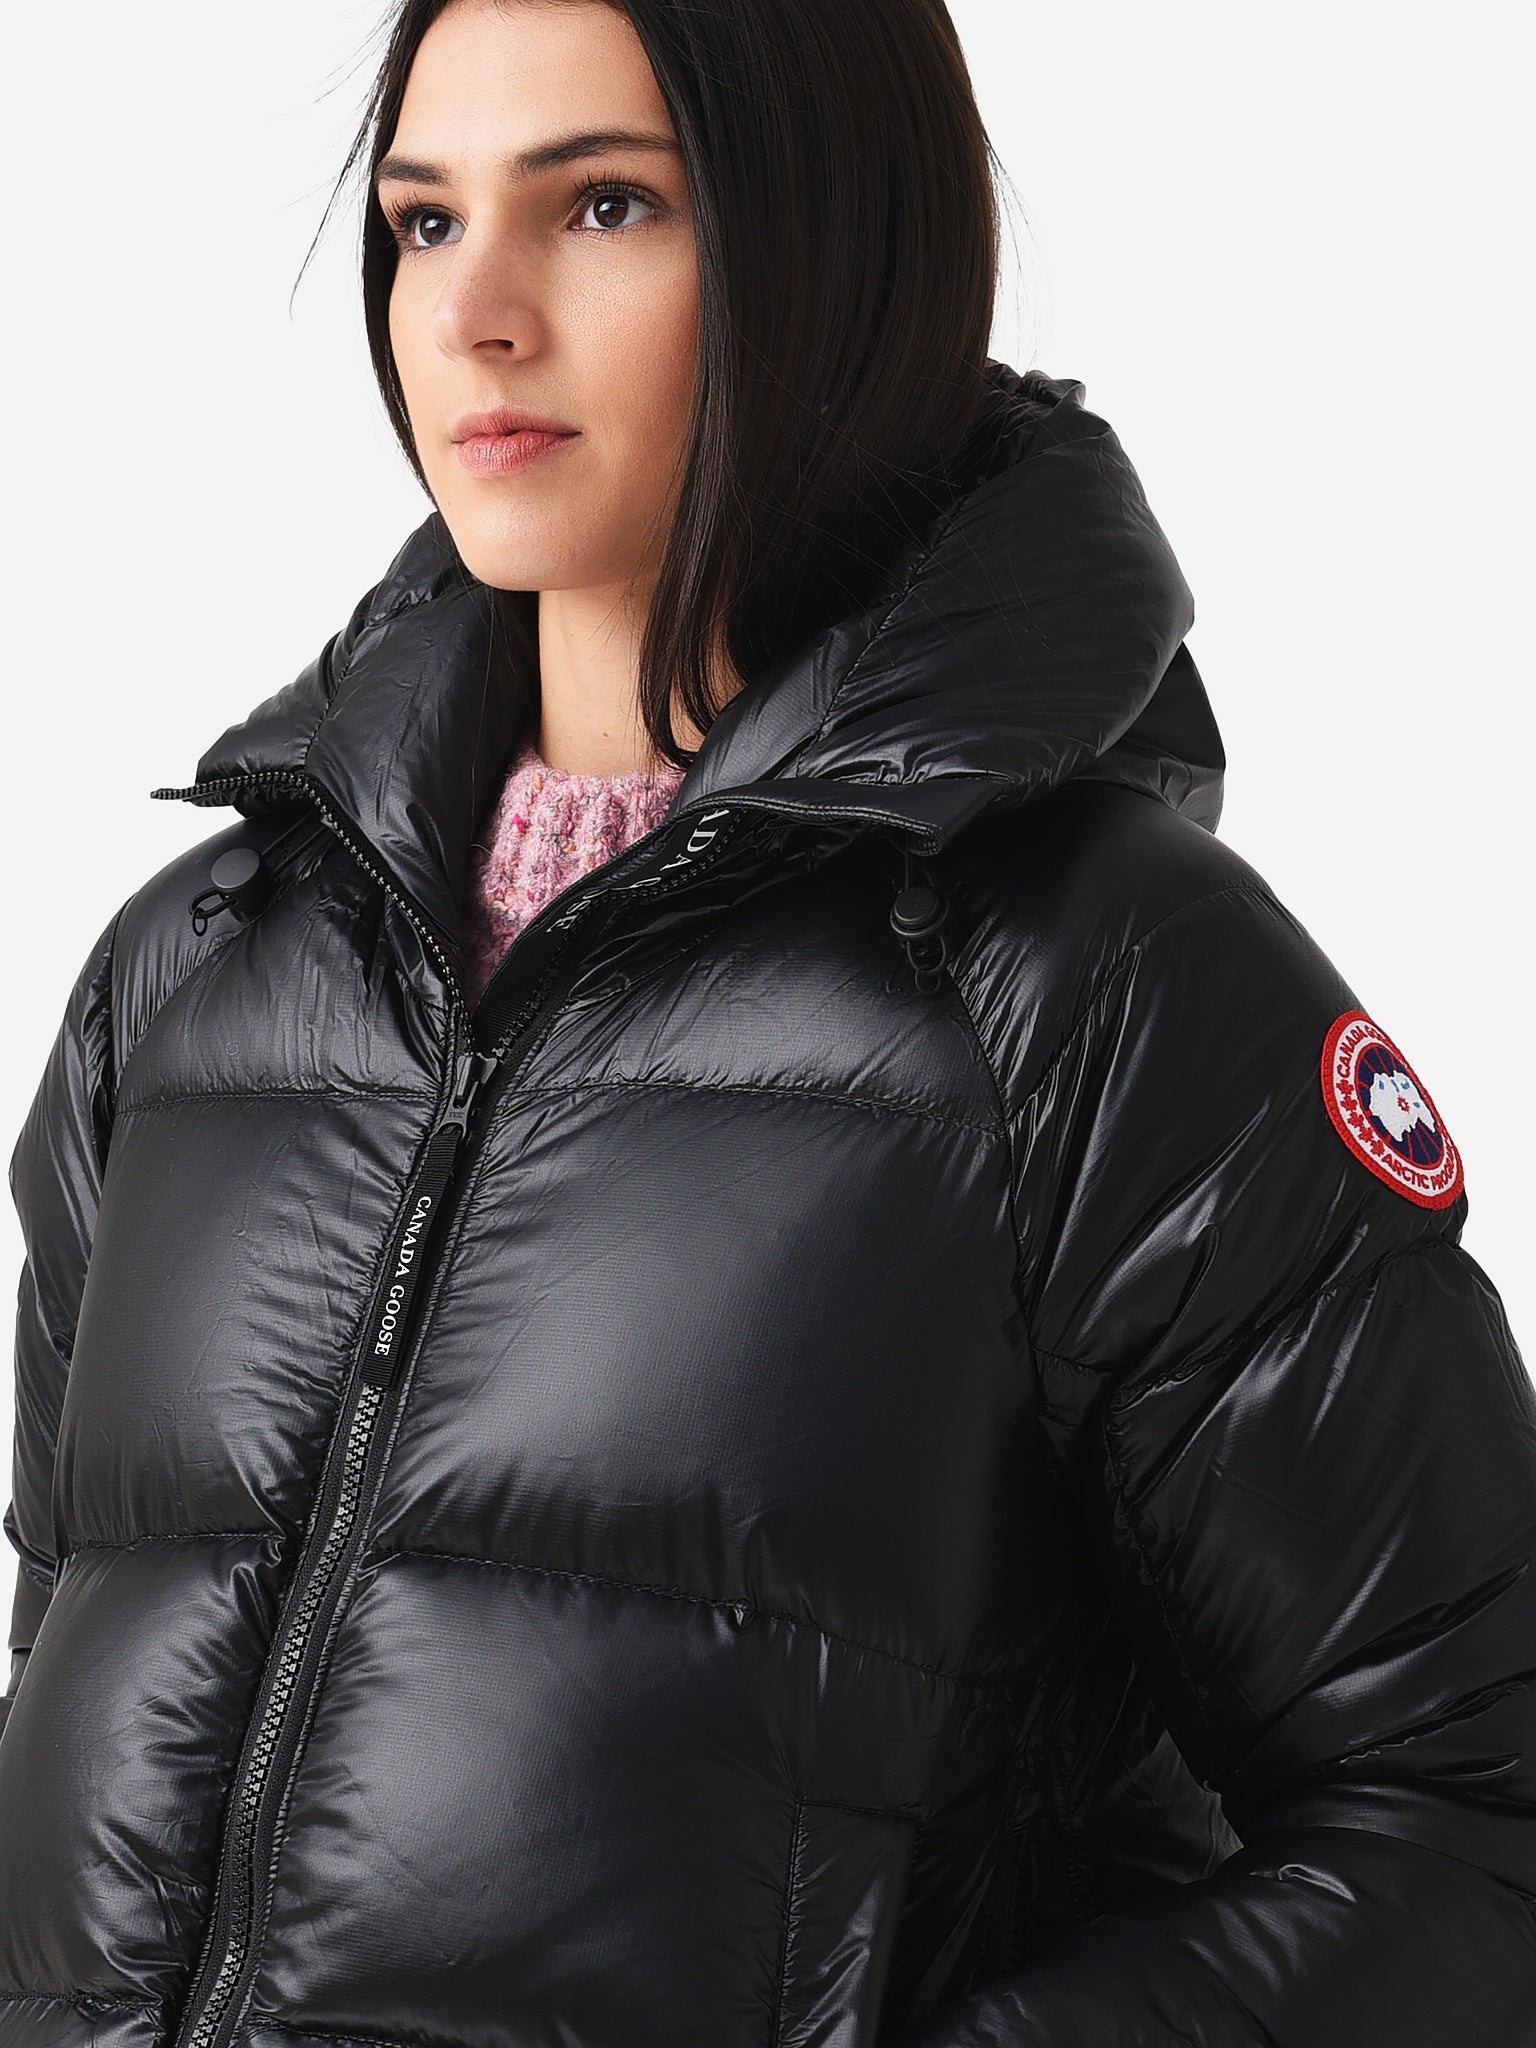 Canada Goose Puffer Jacket Women Cheap Sale | website.jkuat.ac.ke